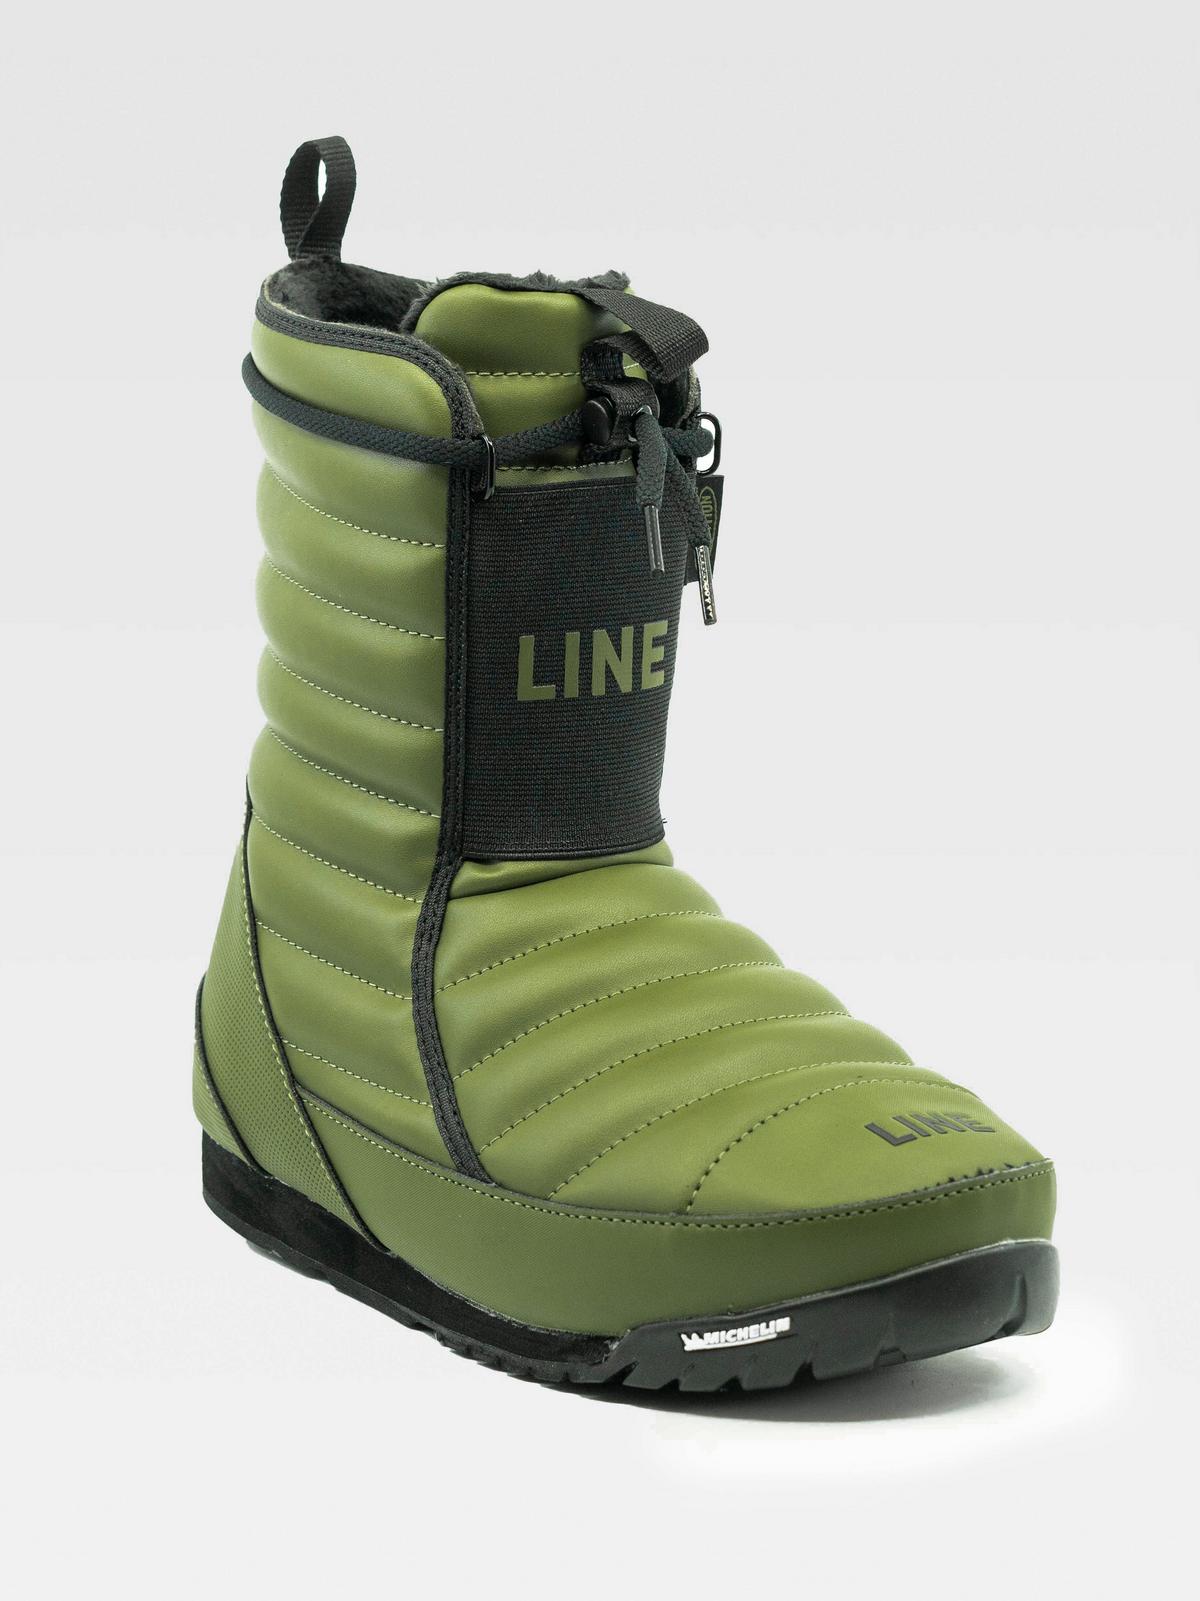 apres ski boots